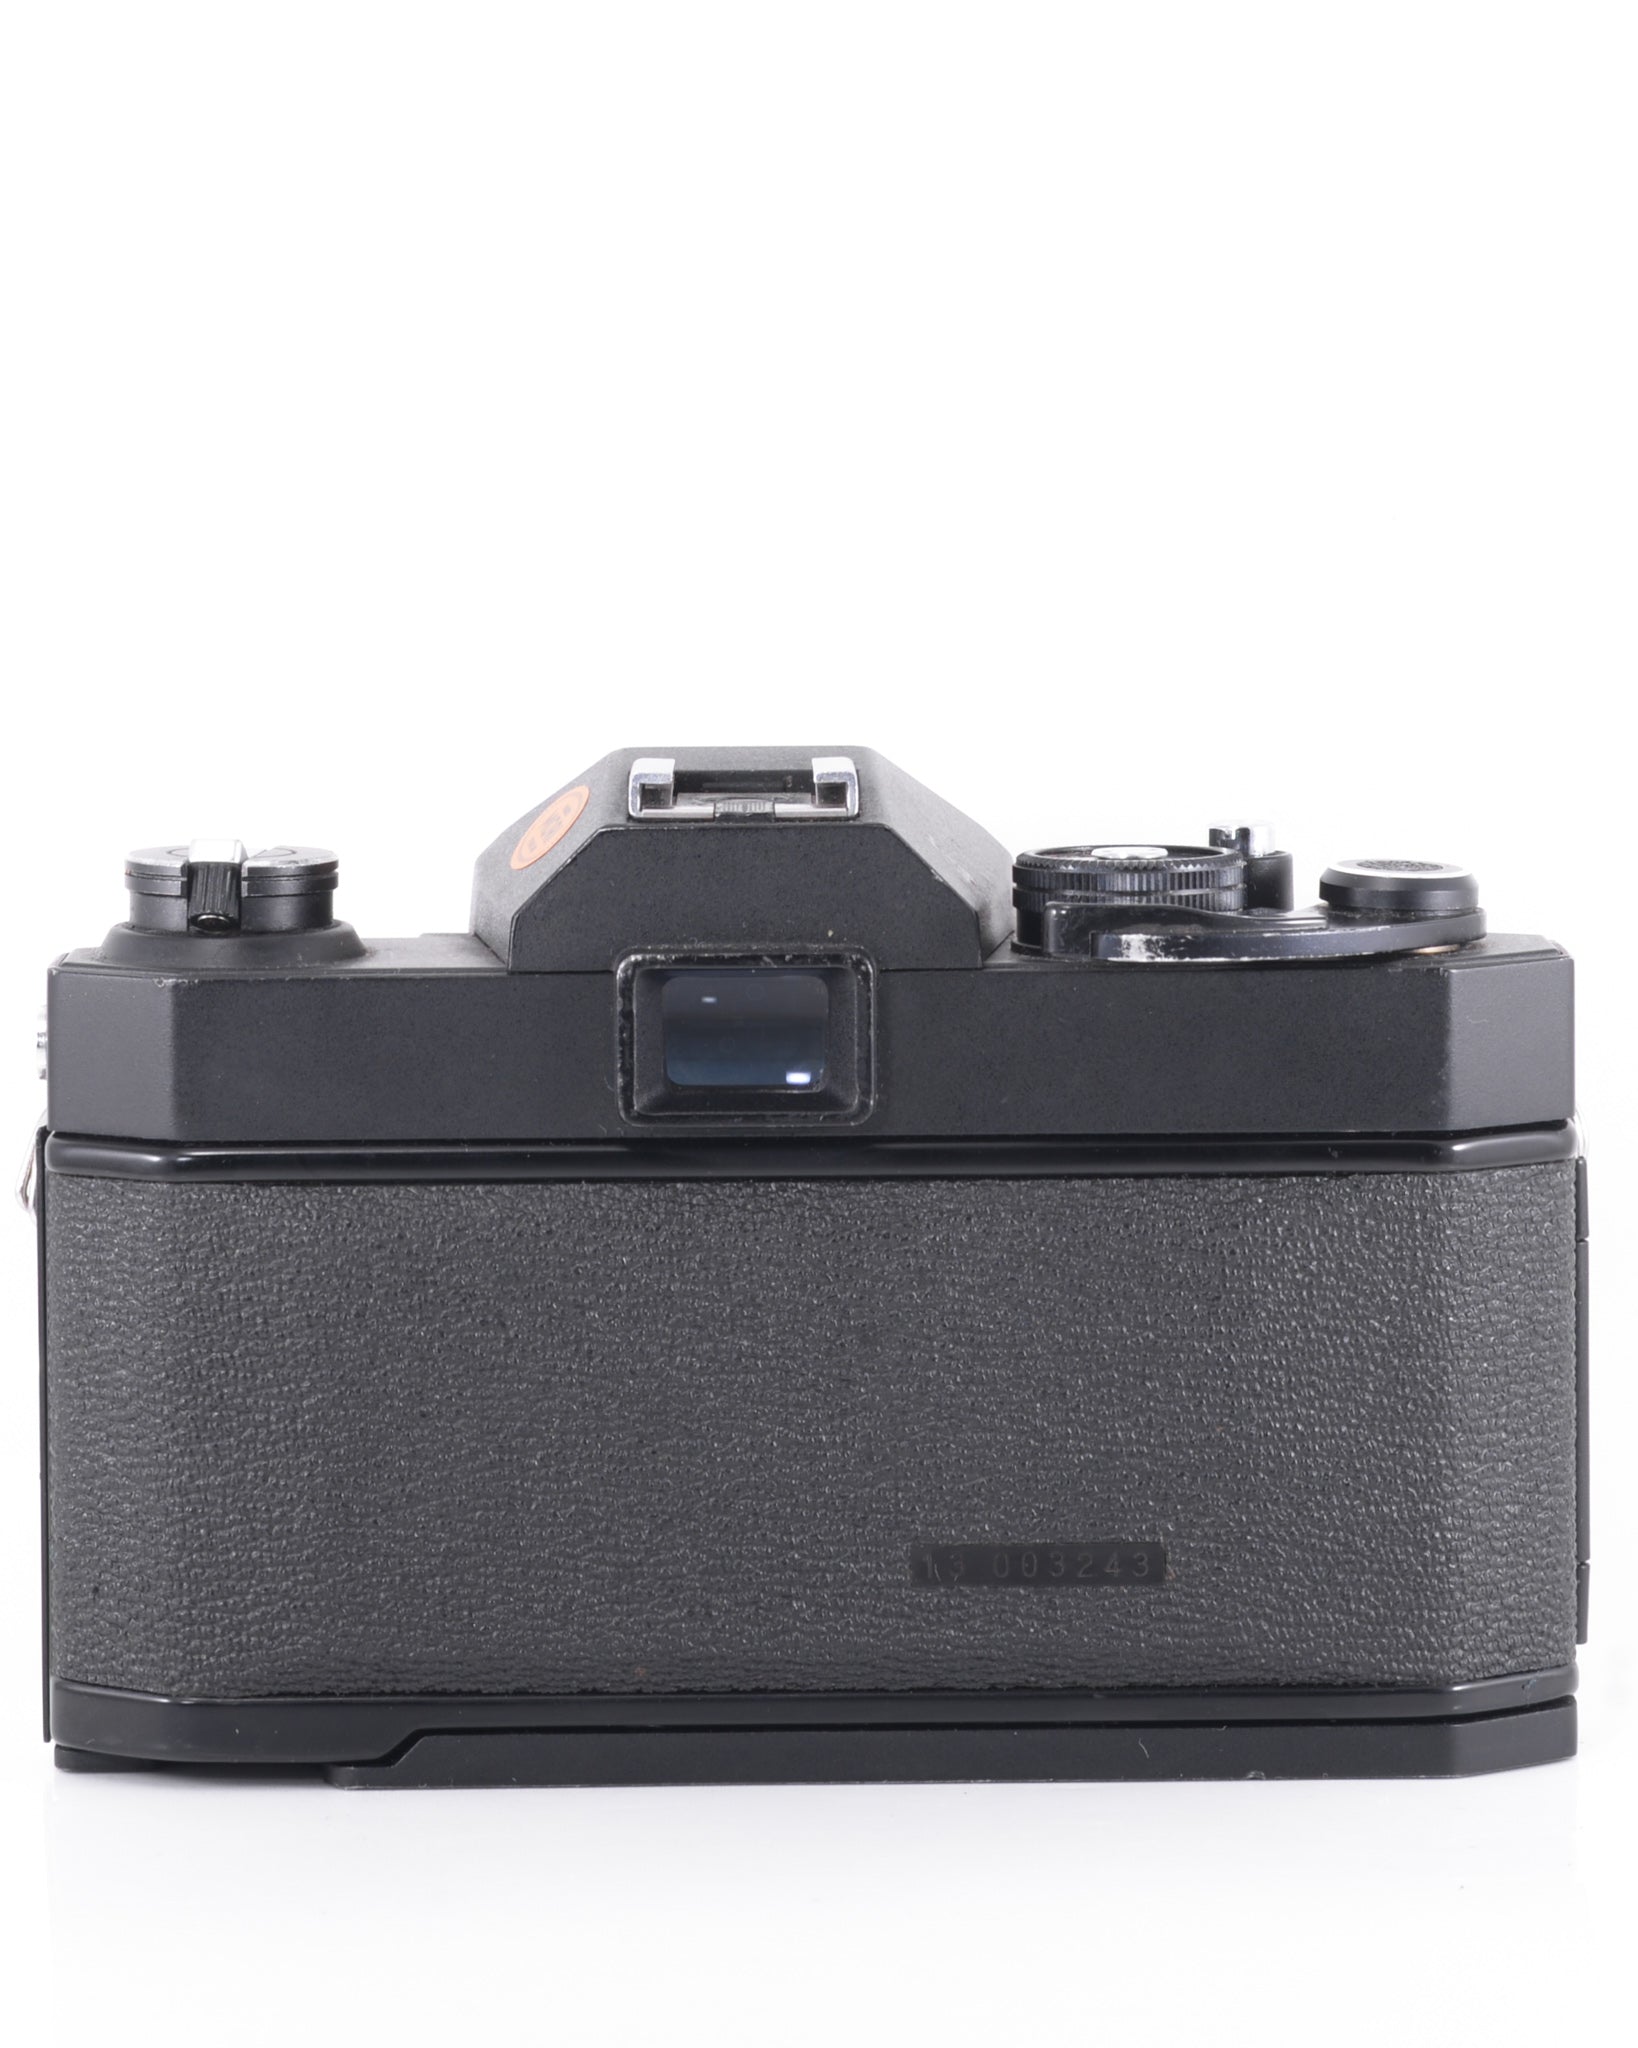 Ricoh SLX 500 35mm SLR Film Camera with 50mm f2.8 Lens